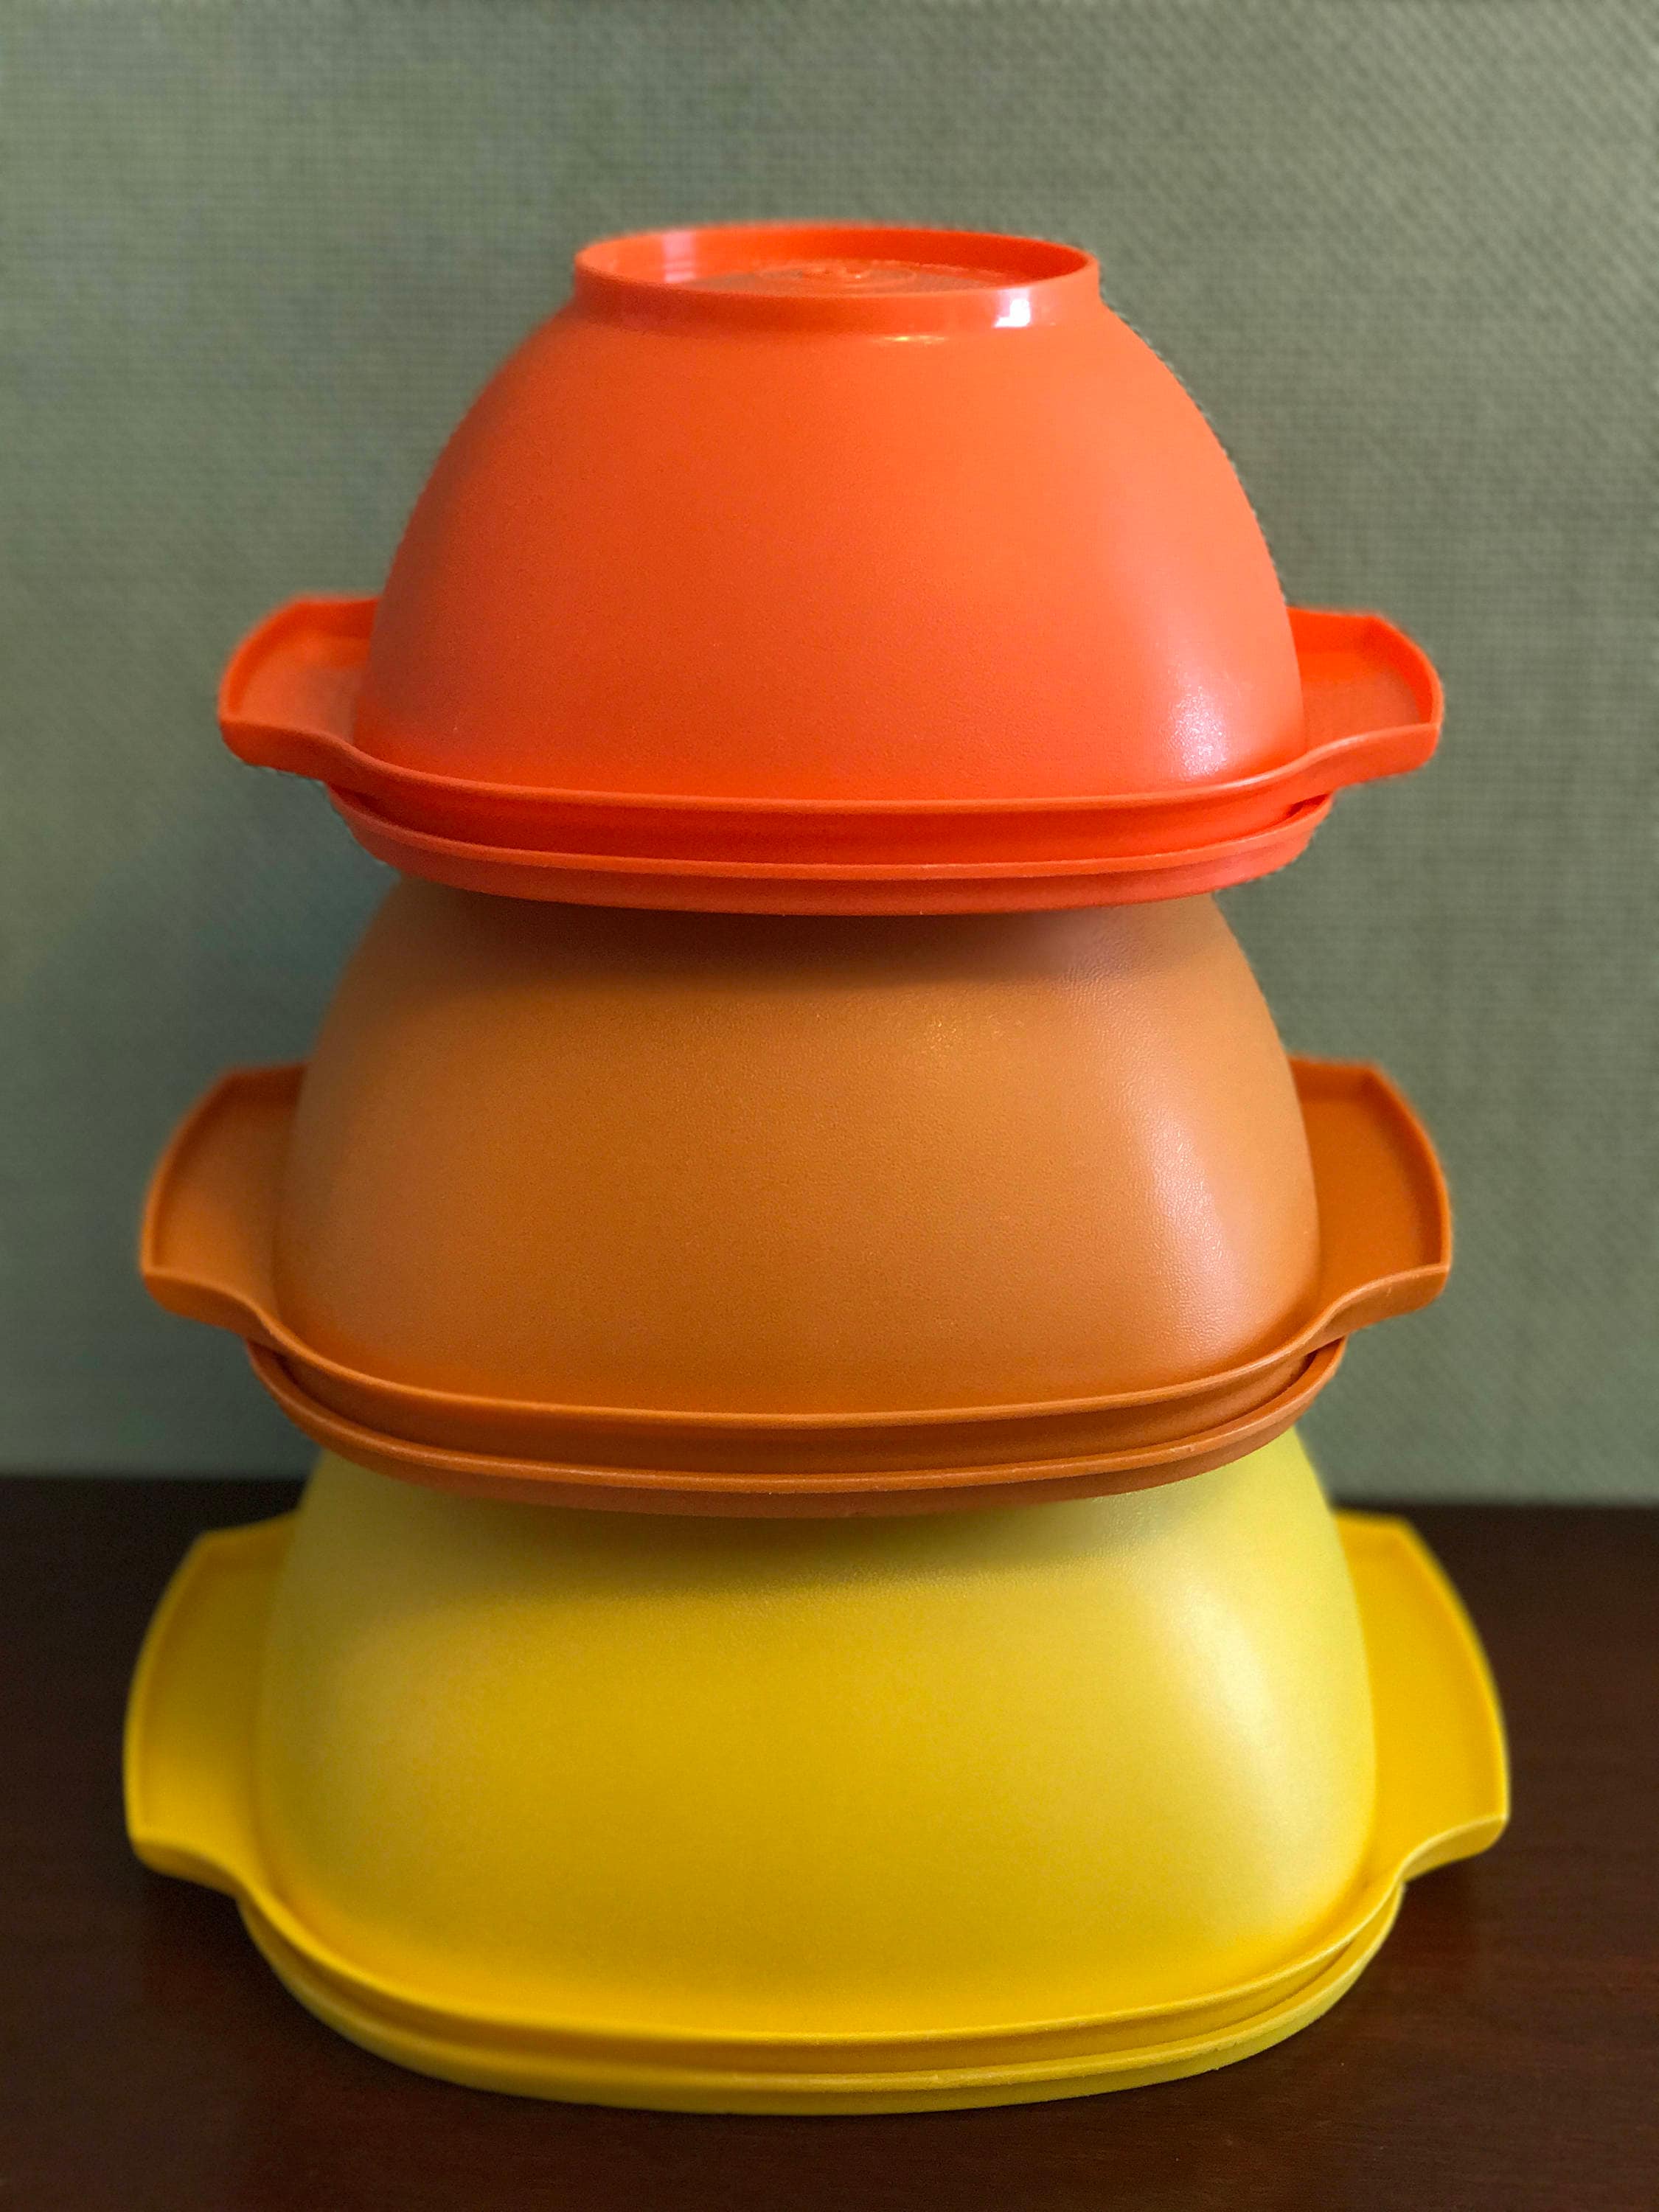 NEW Pair of Vintage Tupperware Seal 'N Save Orange Bowl Set